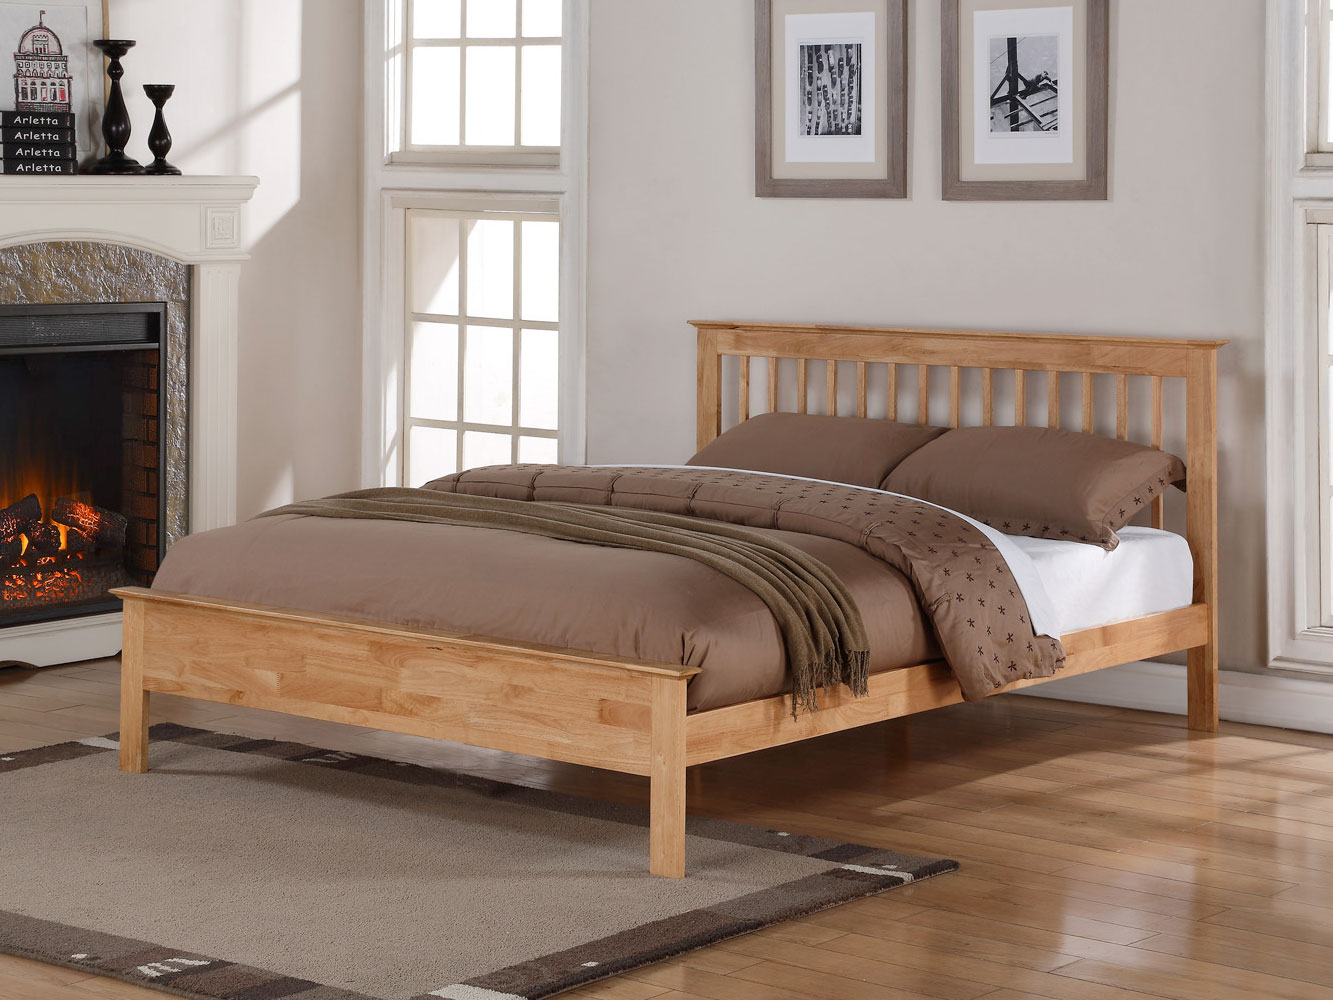 4ft6 Double Flintshire Furniture Pentre Hard Wood Bedstead